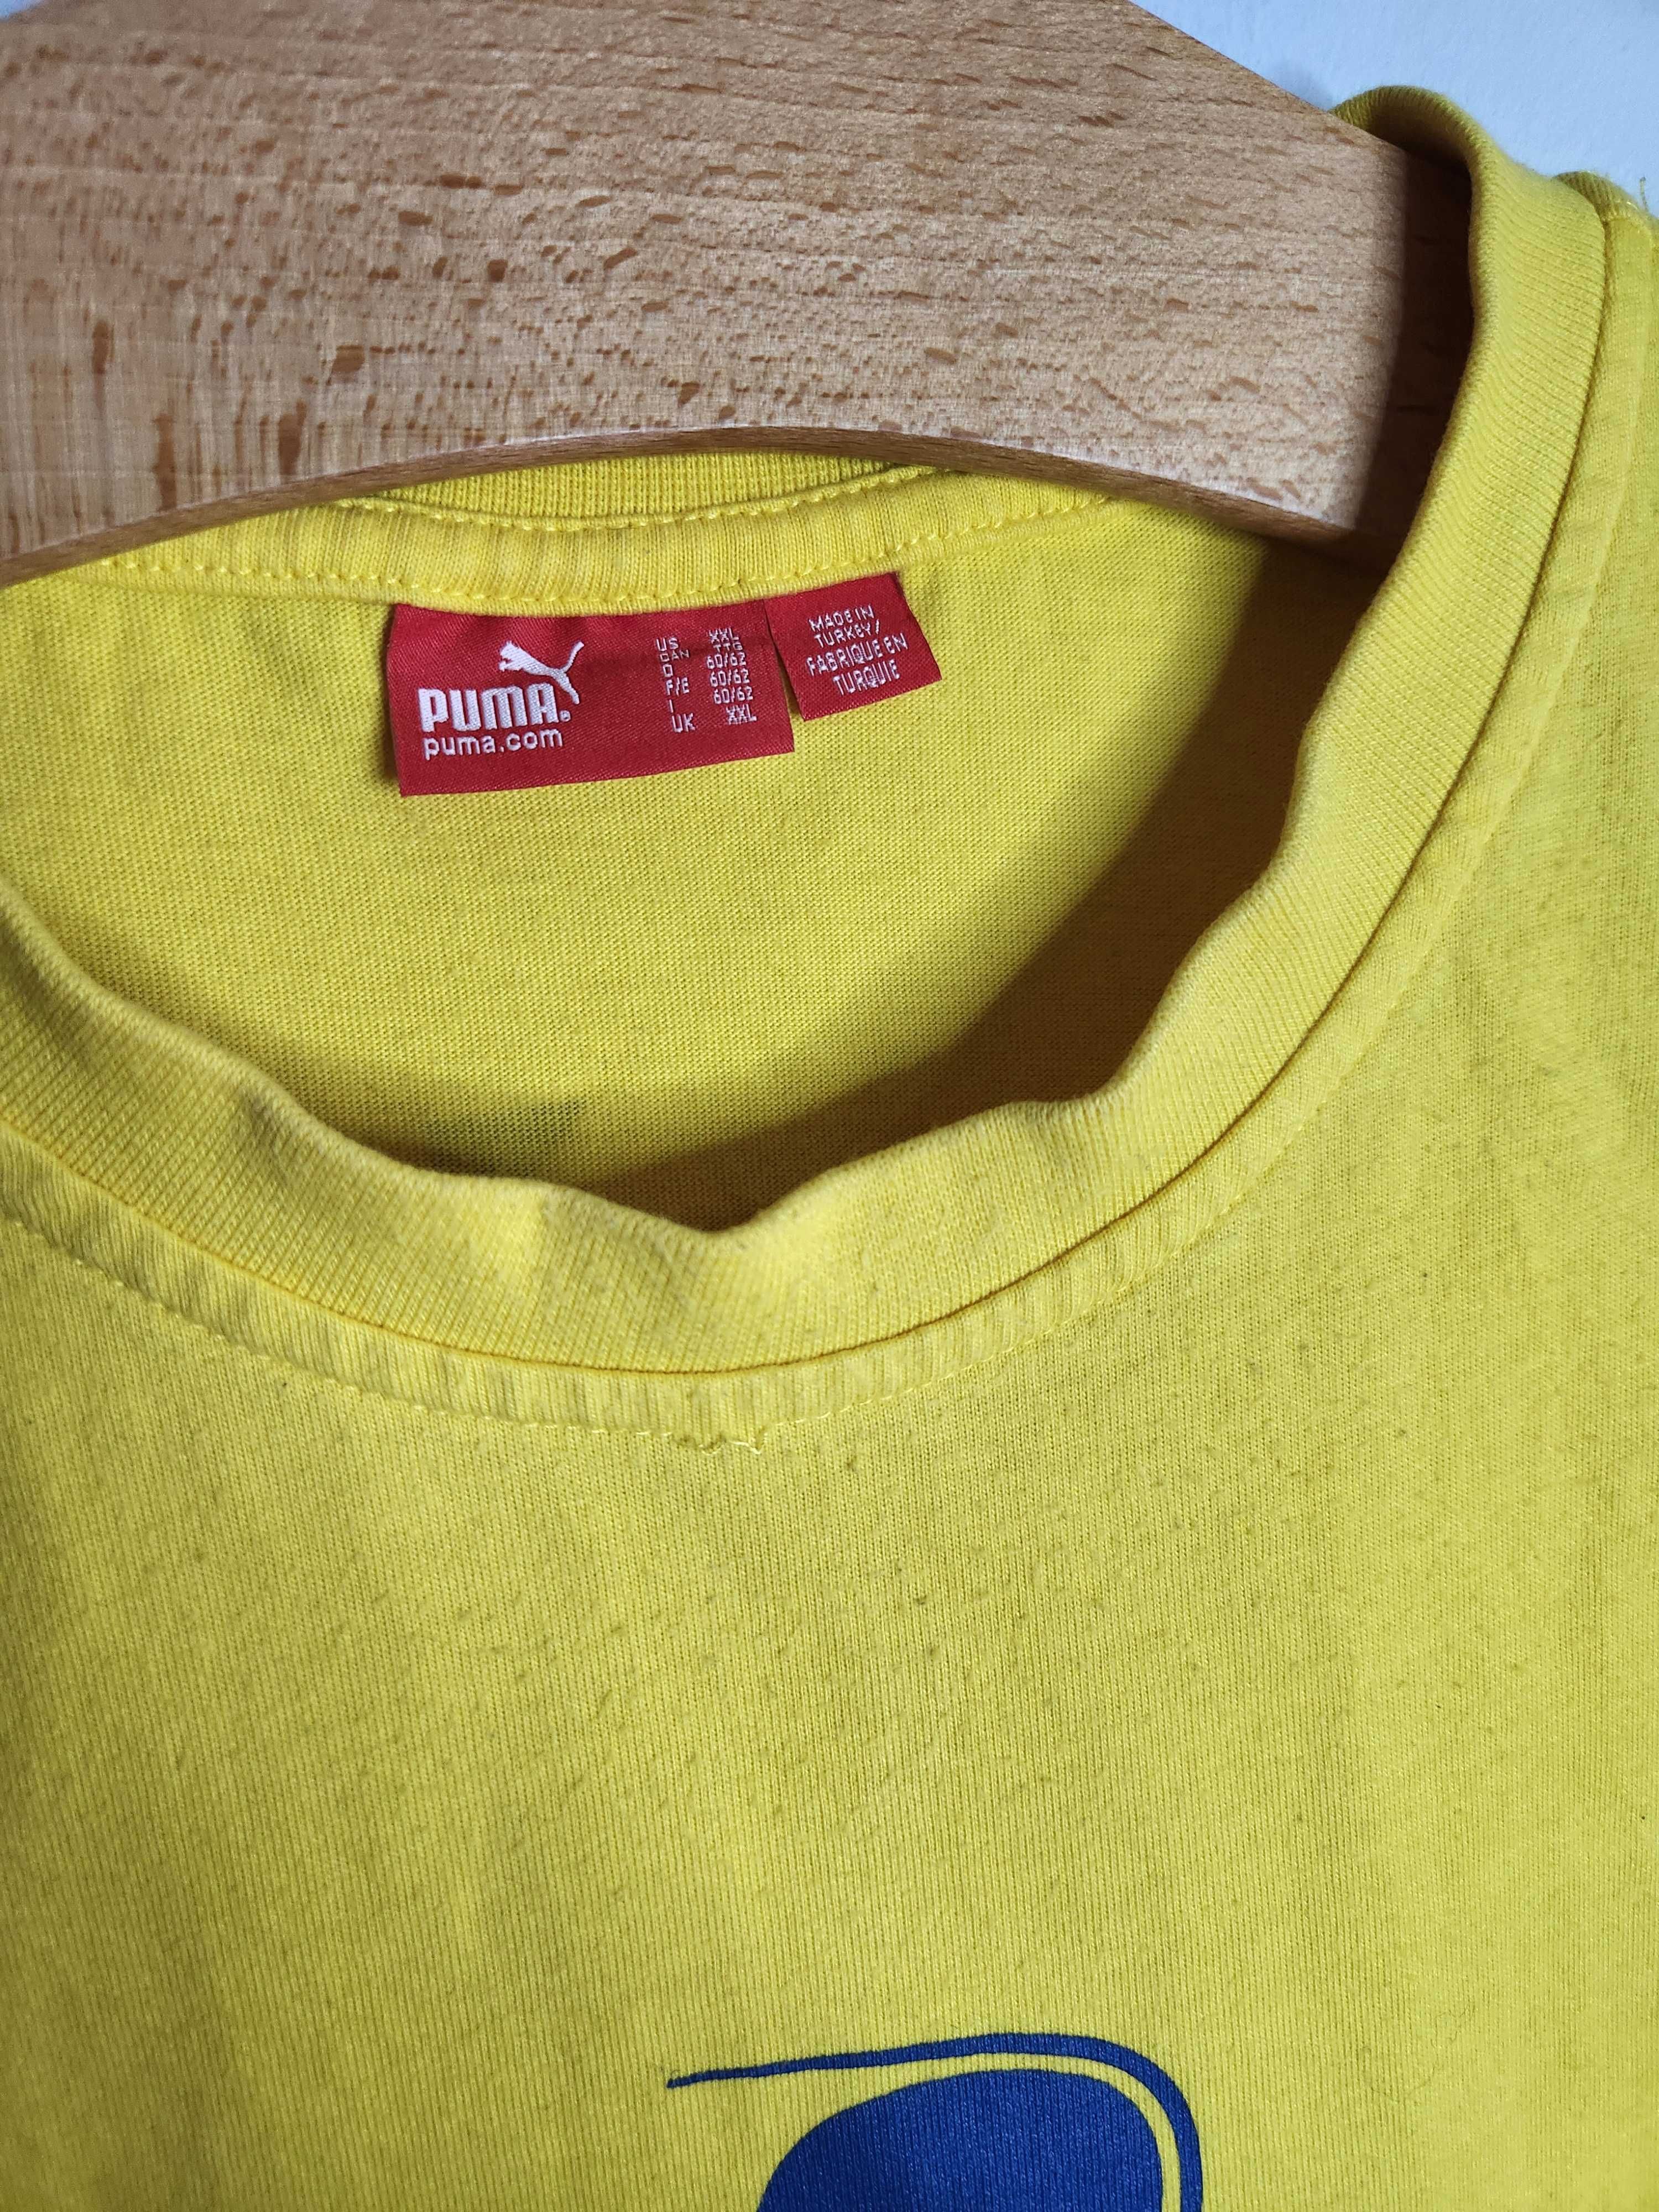 Szwecja Ljunberg #9 Koszulka Piłkarska Sportowa Puma Żółta XXL